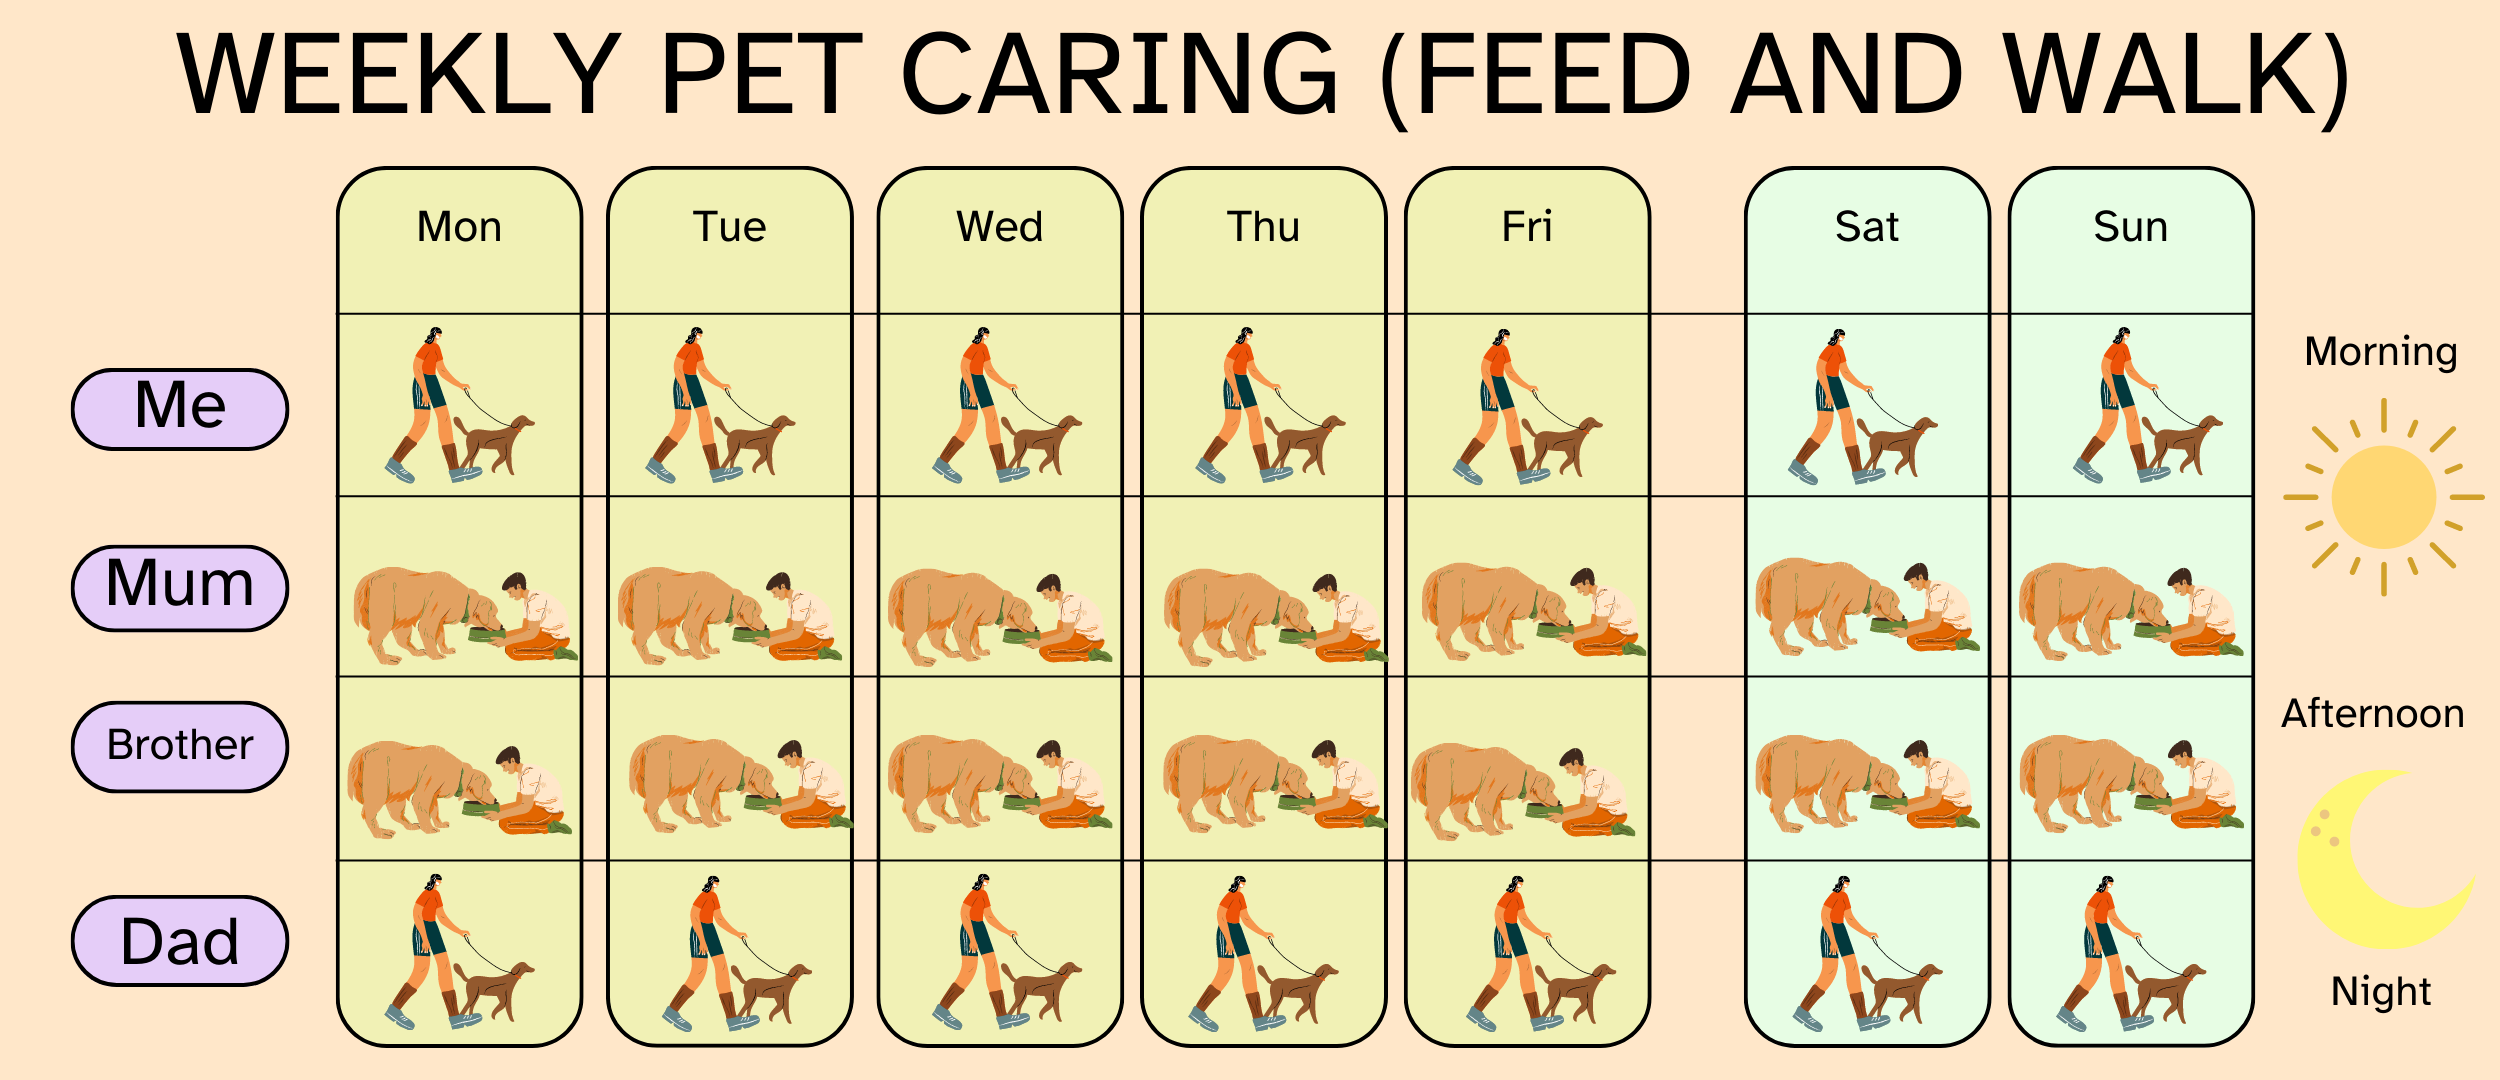 En la imagen puedes ver un organizador semanal para repartir tareas de cuidado de mascotas entre los miembros de la familia